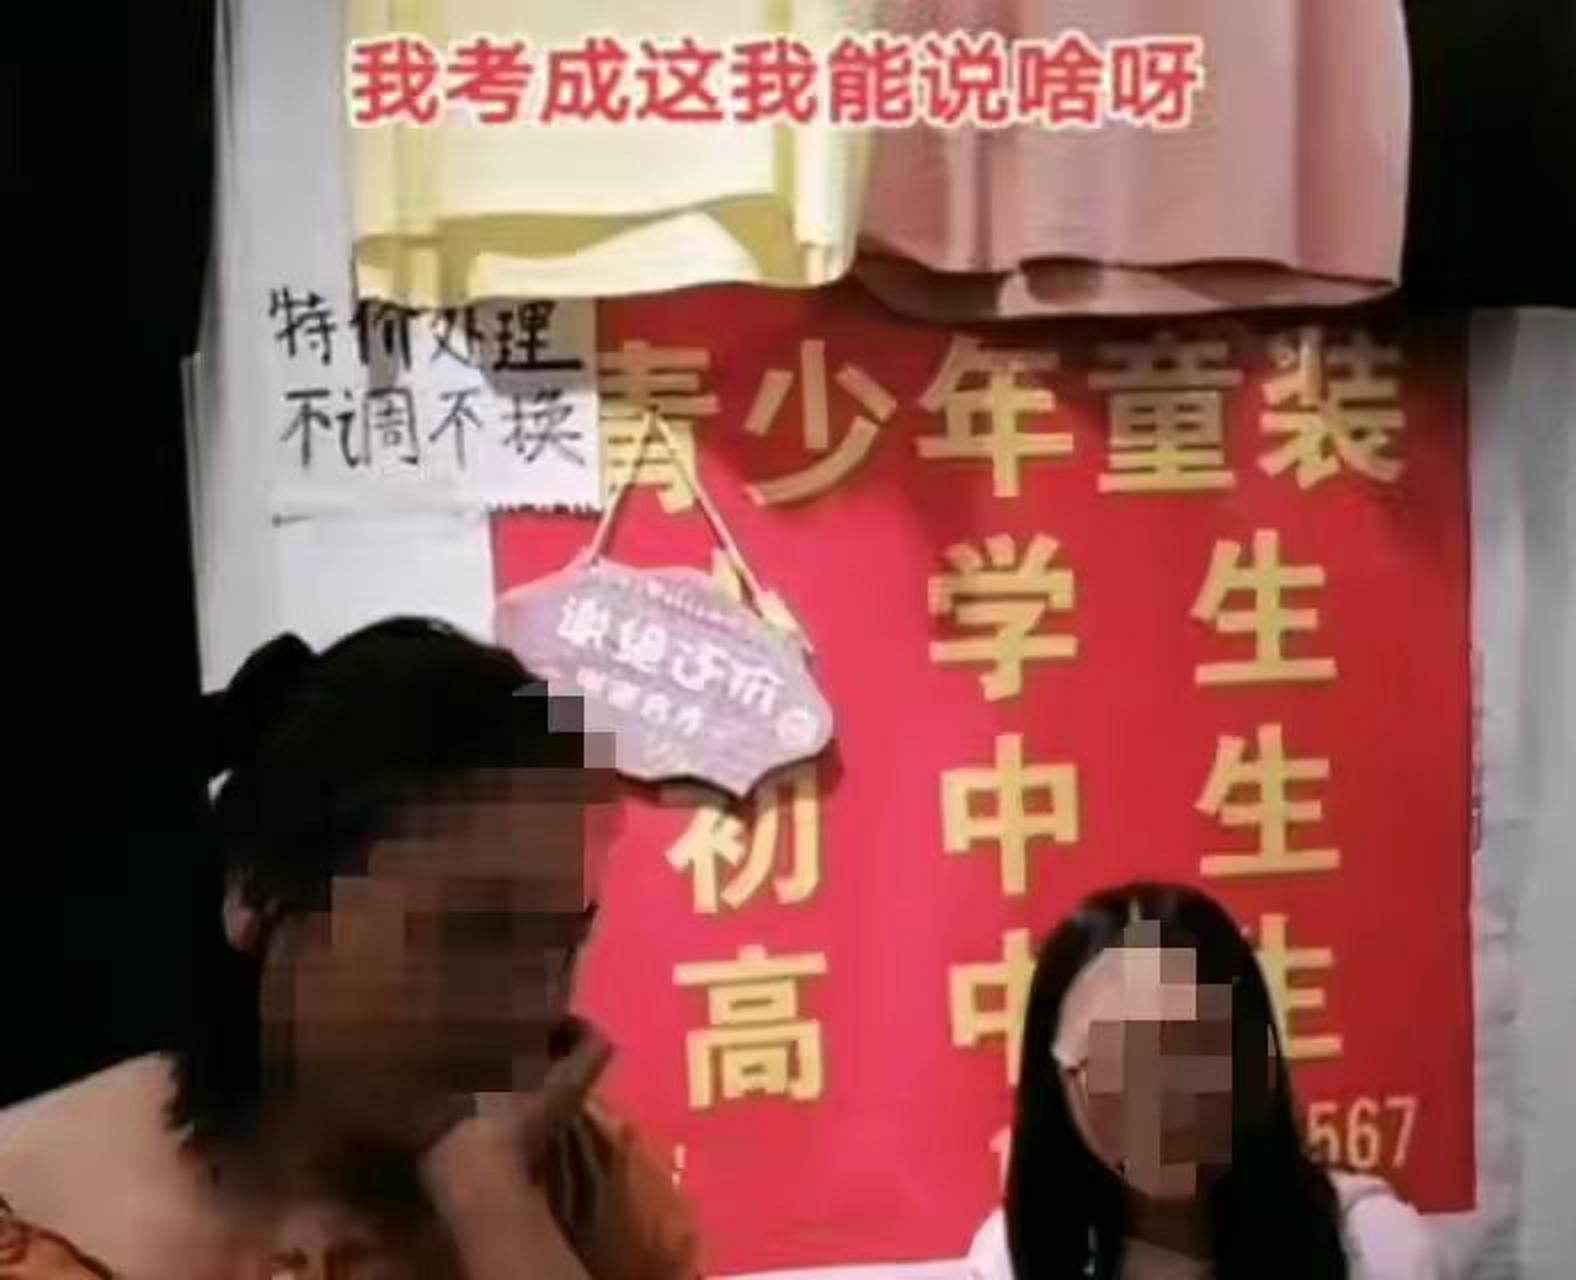 6月26日,河南漯河.一女生高考没有考好,想复读,正在和妈妈商量.